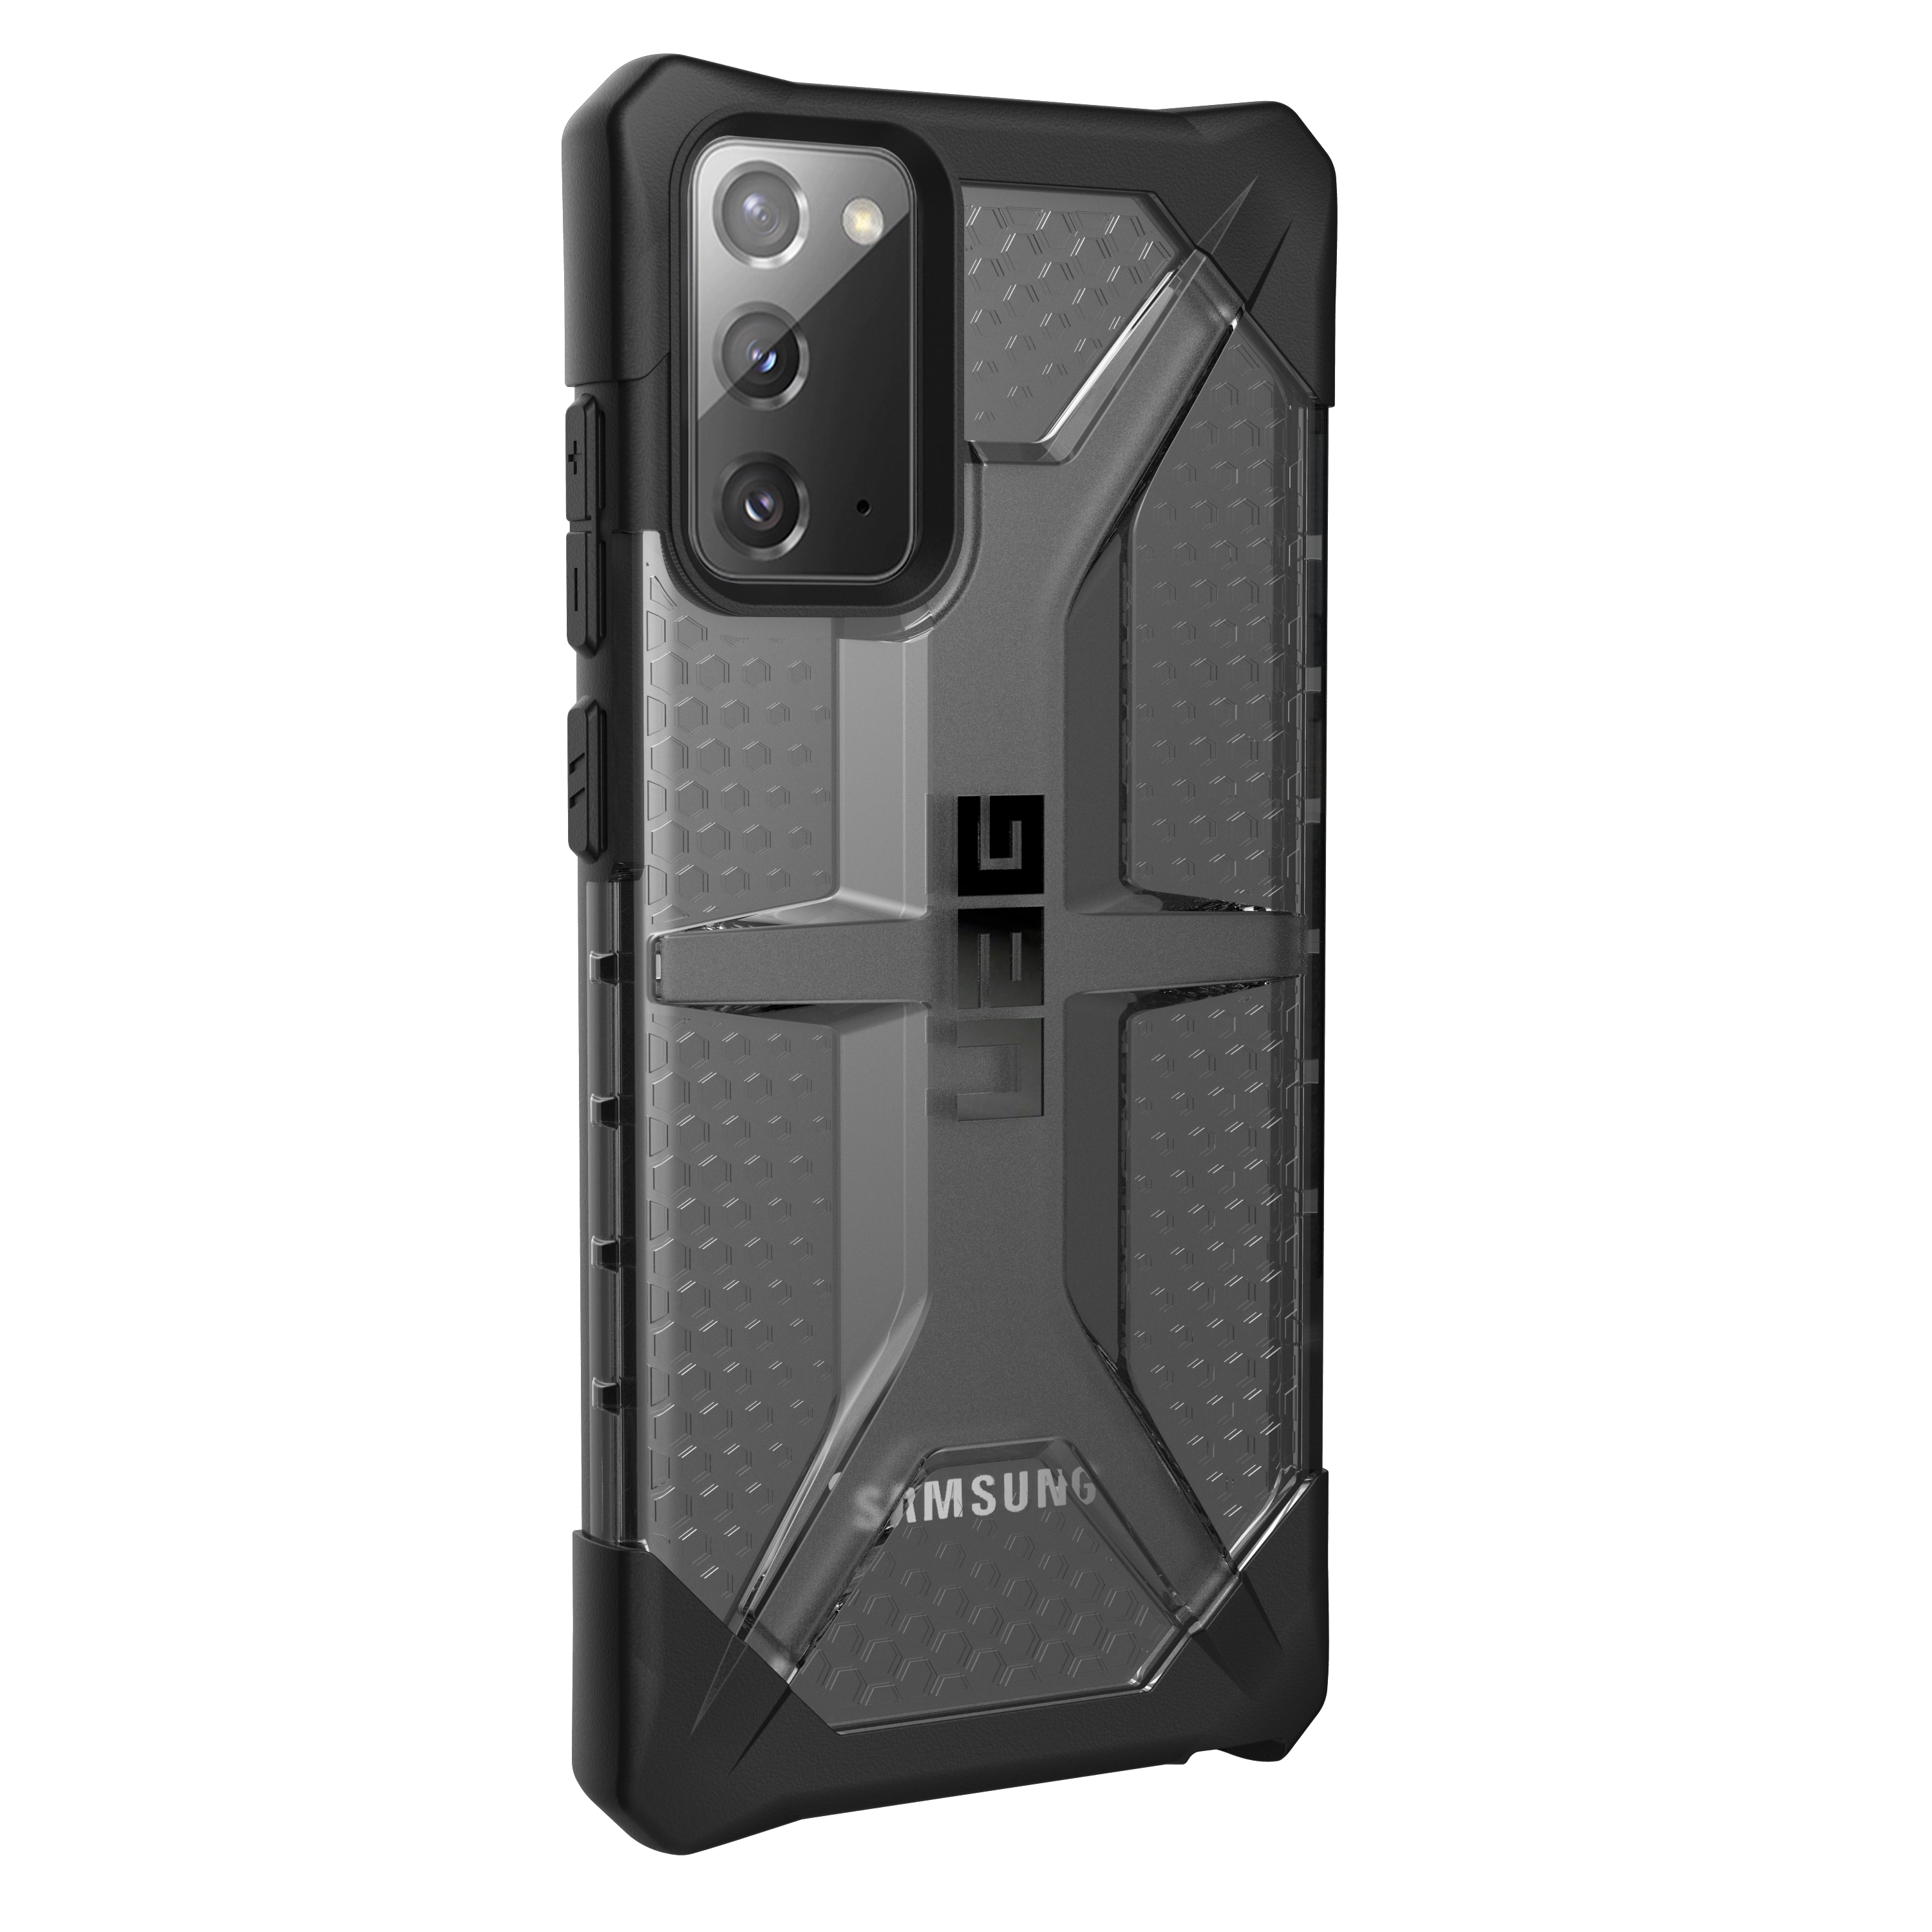 URBAN ARMOR GEAR UAG Plasma Galaxy Note20 5G Case